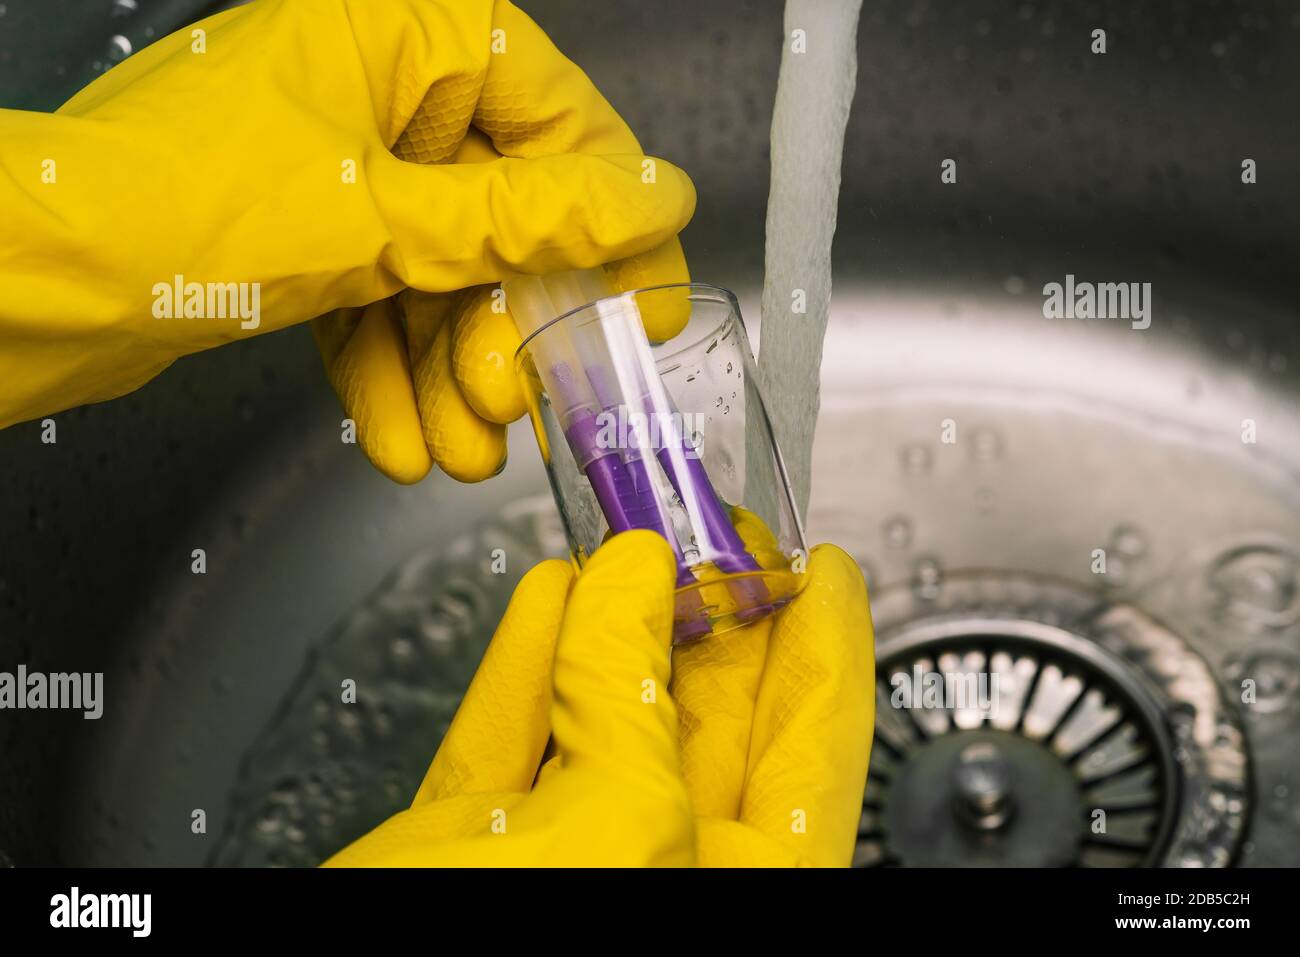 Un scientifique rinçant des tubes Covid-19 dans le laboratoire. Gants de protection jaunes. Bactériologie du coronavirus, virologie, ADN et soins de santé Banque D'Images